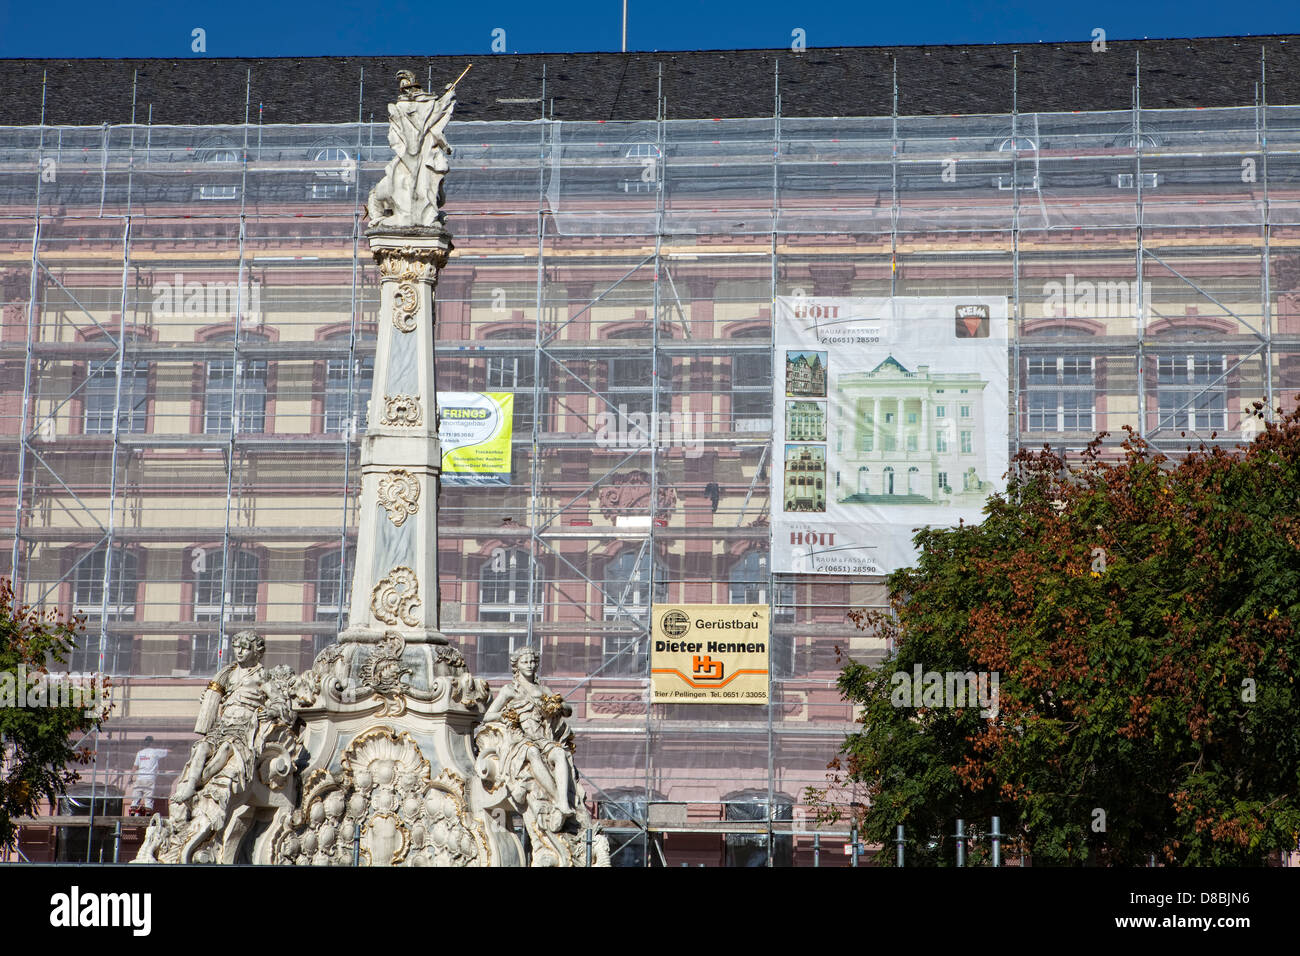 La rénovation de bâtiments, l'échafaudage, Georgsbrunnen fontaine, Trèves, Rhénanie-Palatinat, Allemagne, Europe Banque D'Images